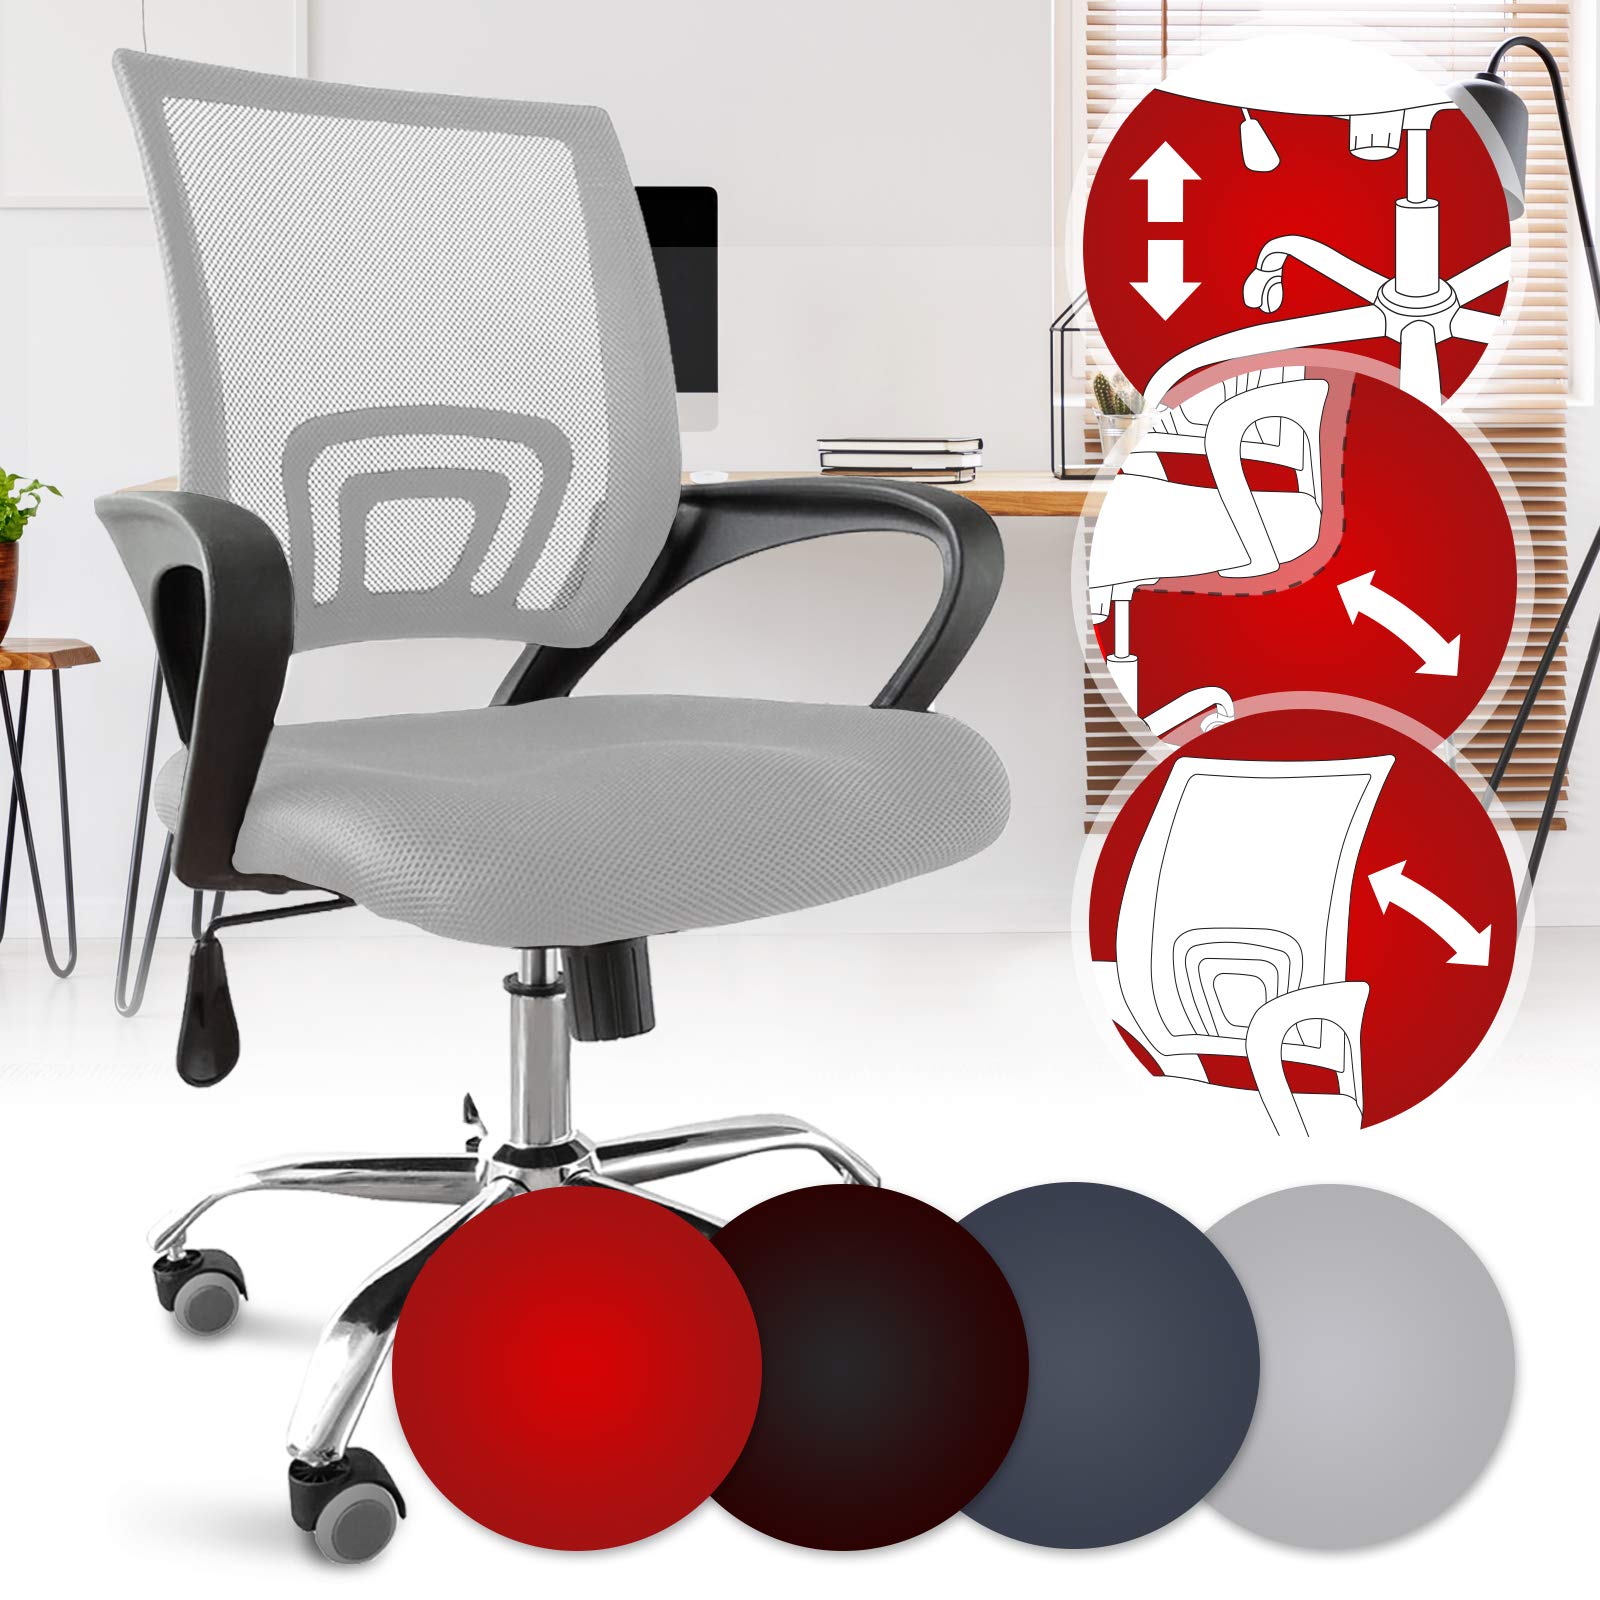 Bürostuhl - ergonomisch, mit Armlehnen und Rollen, Netzbezug und Wippfunktion, höhenverstellbar, bis 120kg, Farbwahl - Chefsessel, Drehstuhl, Schreibtischstuhl, Computerstuhl für Home Office